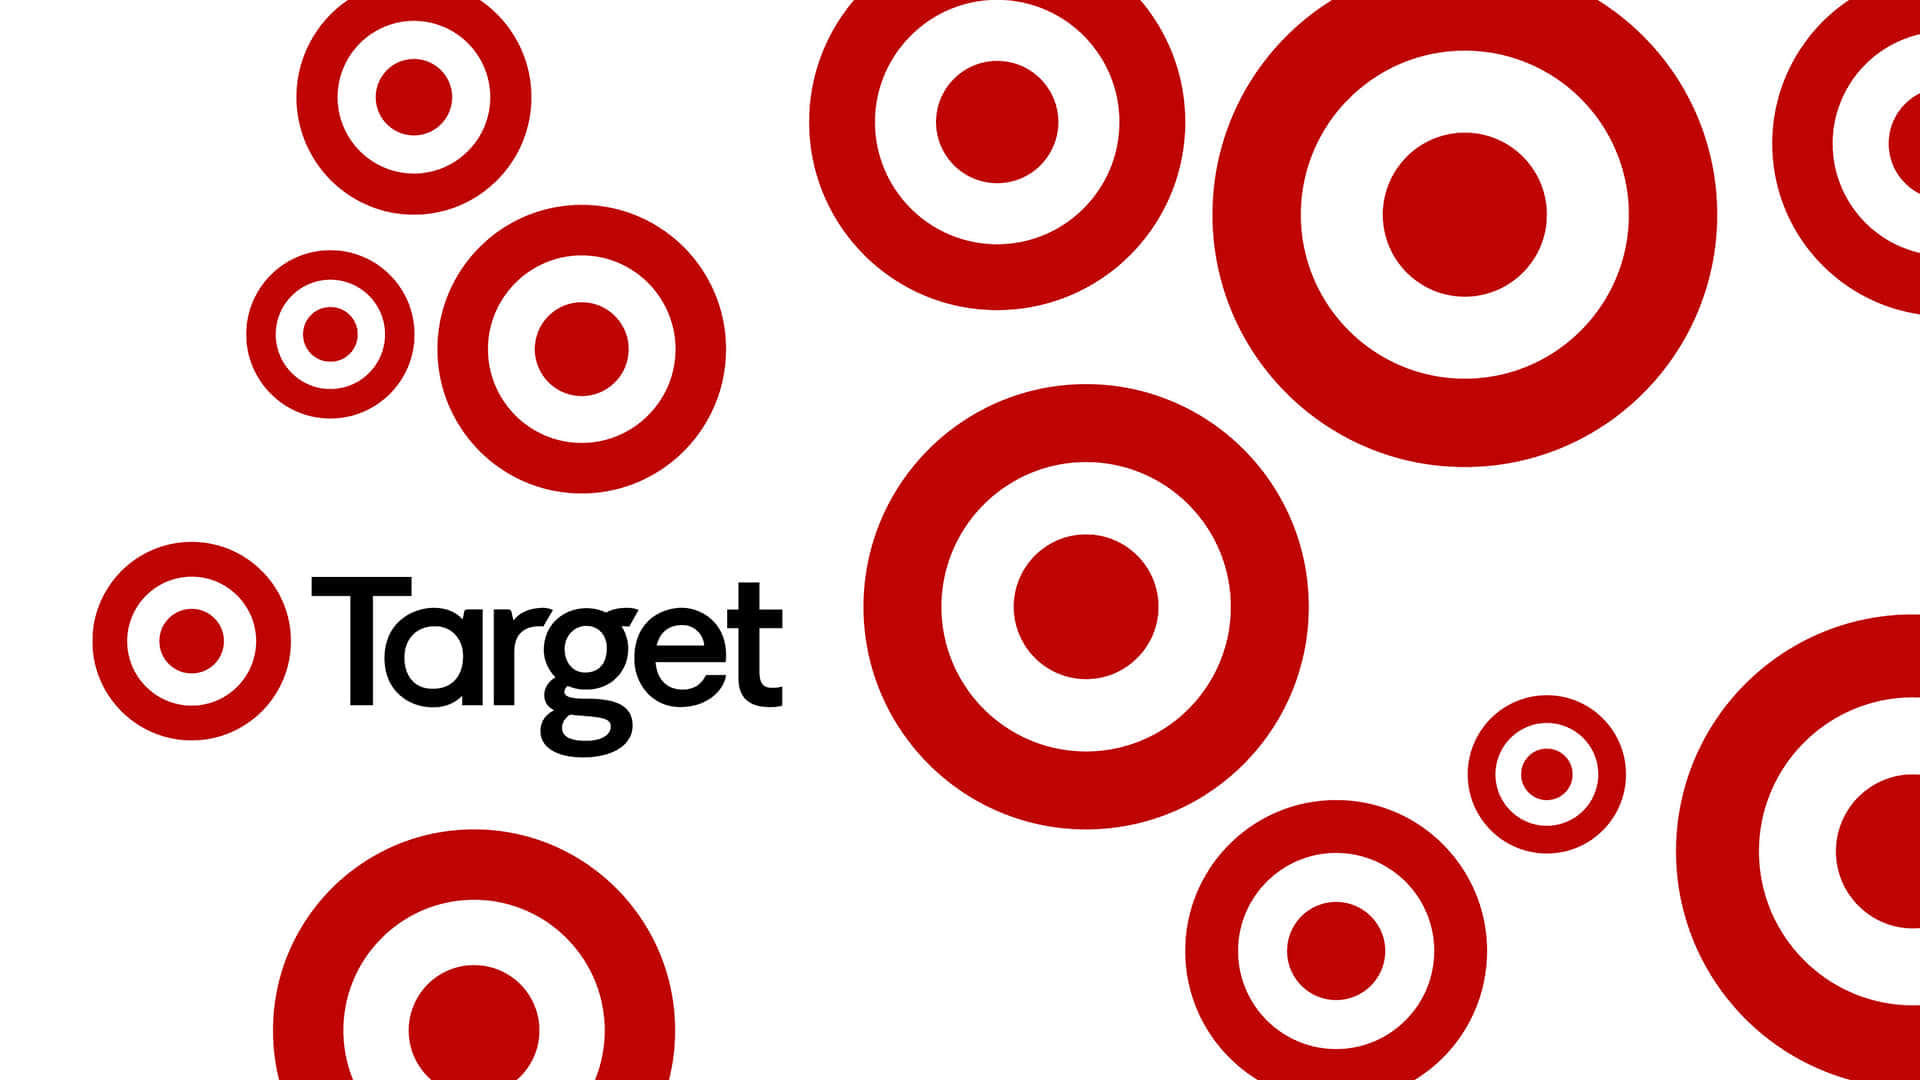 Logotipode Target Con Círculos Rojos Sobre Fondo Blanco